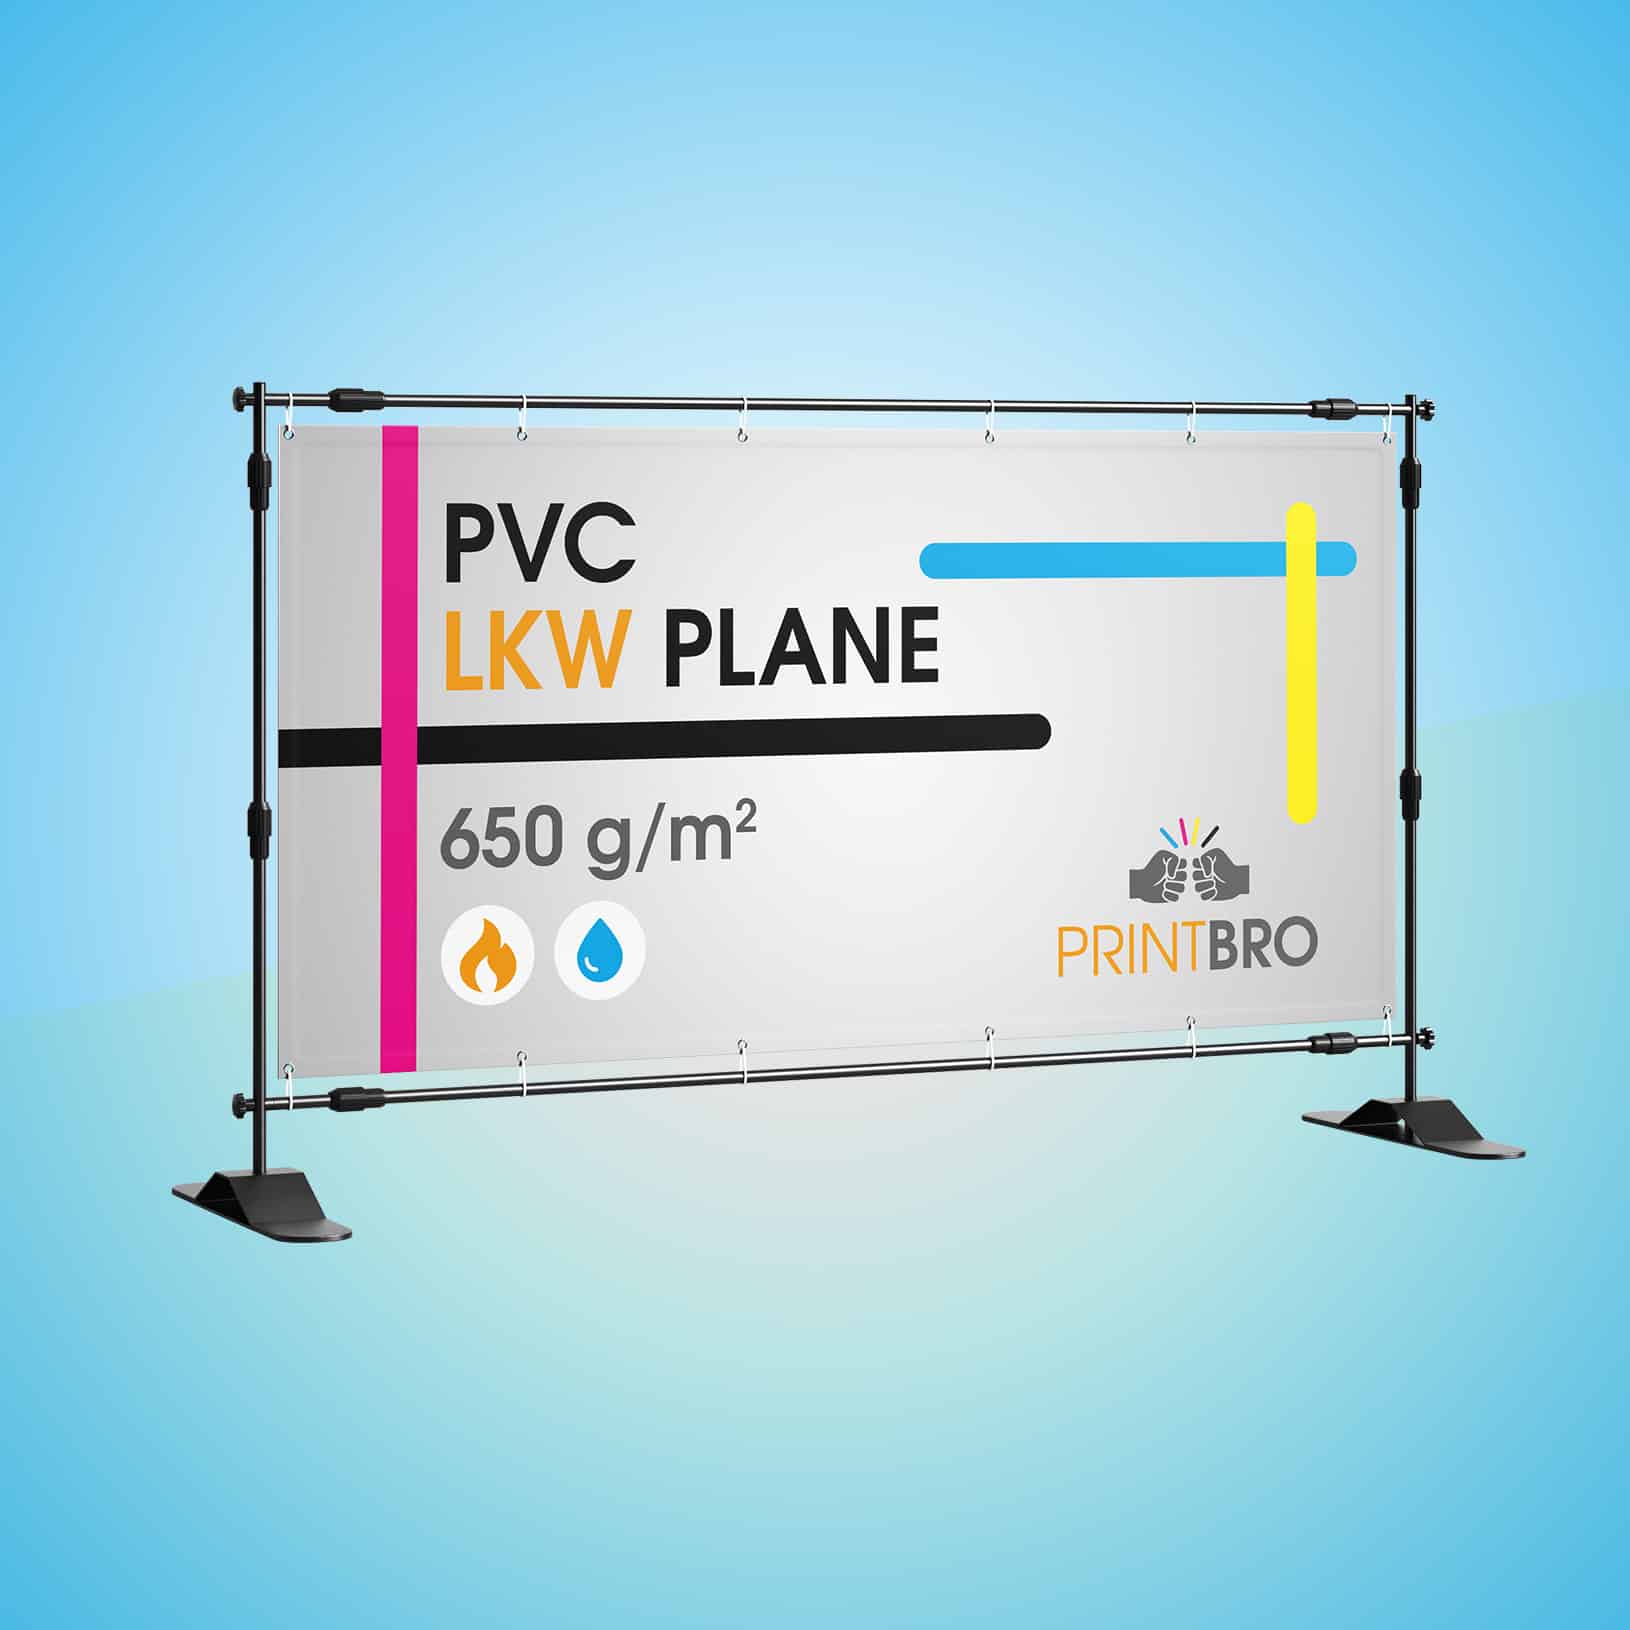 Werbebanner Werbeplane LKW Plane PVC Plane Banner Digitaldruck Werbeplakat Druck 